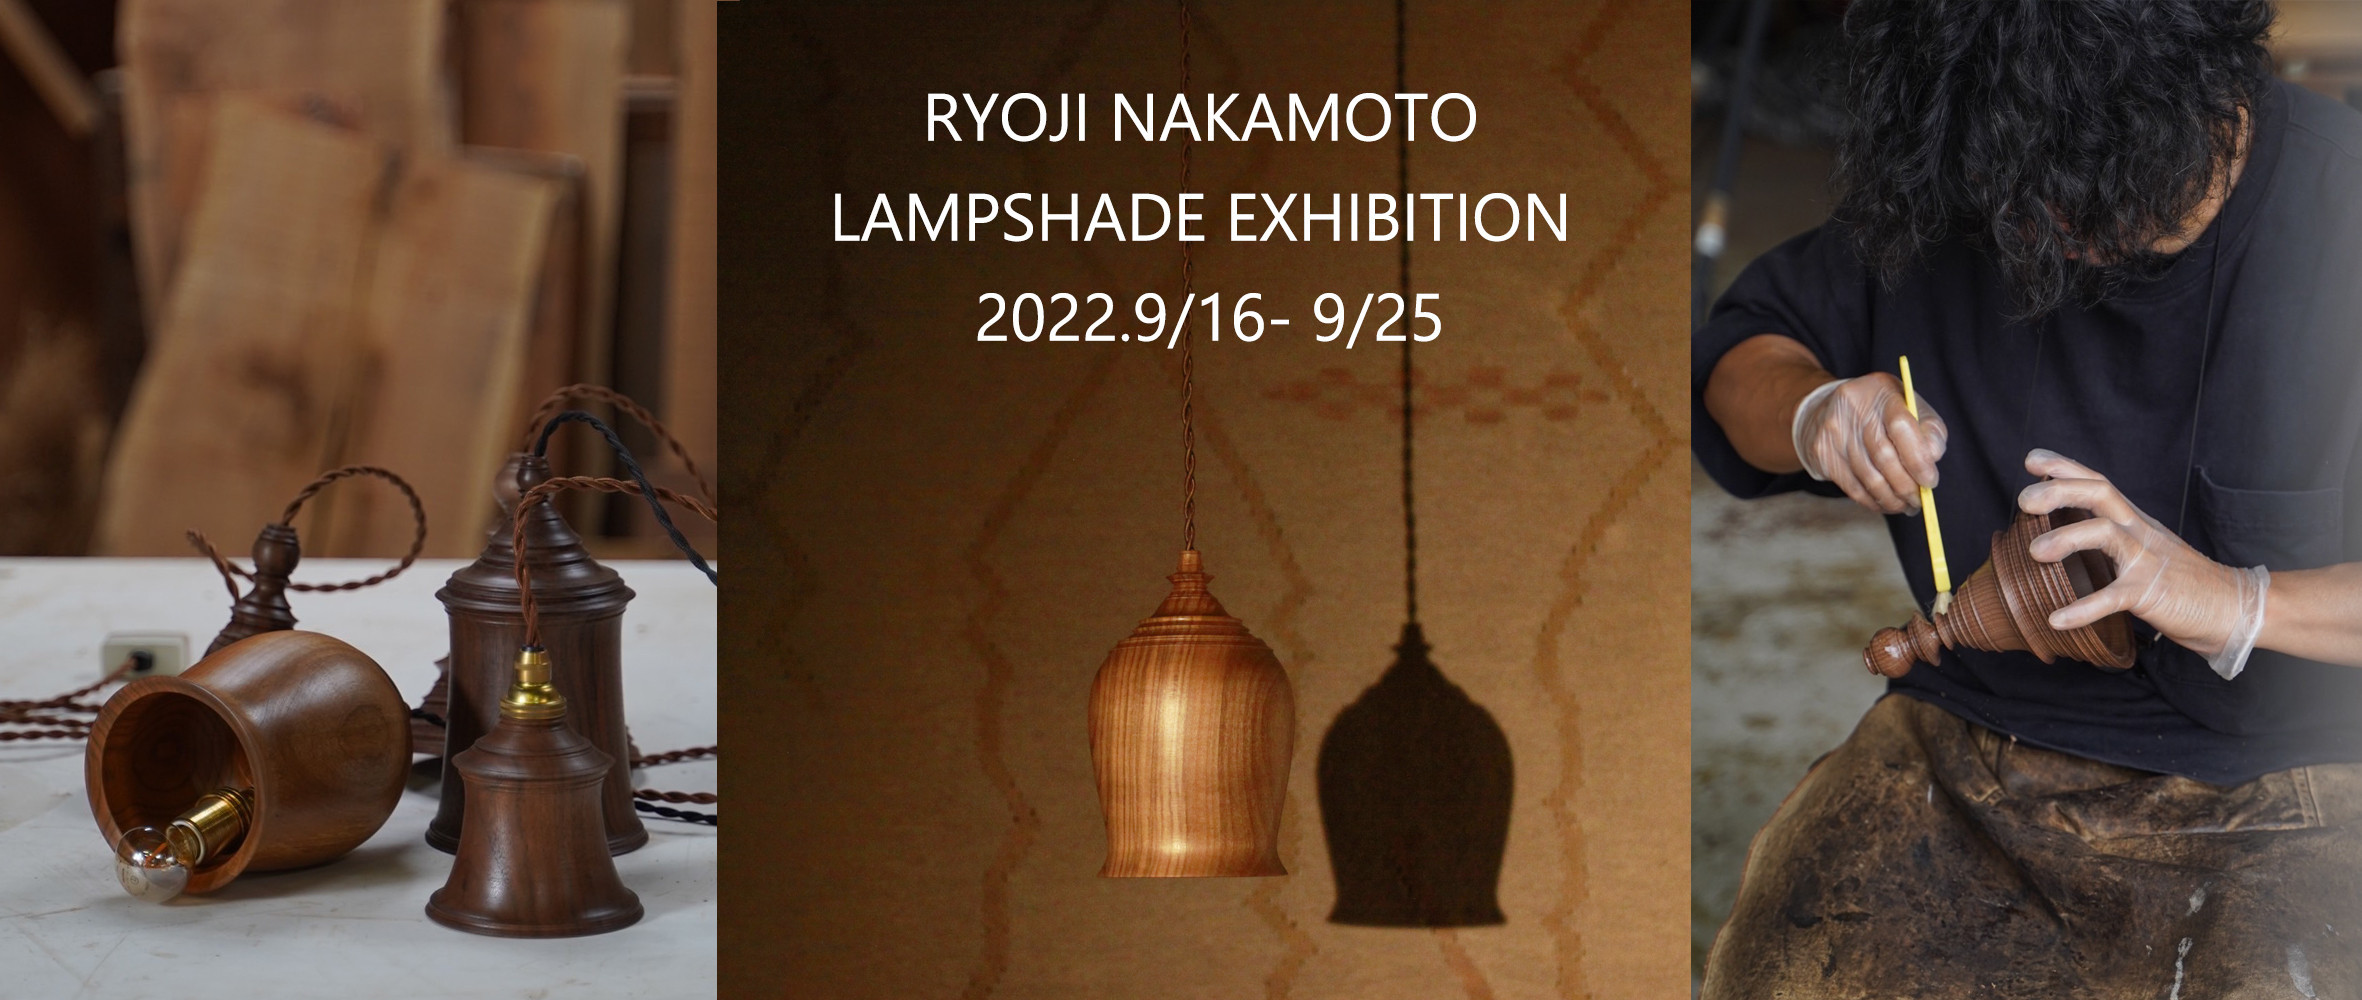 Ryoji Nakamoto lampshade exhibition   